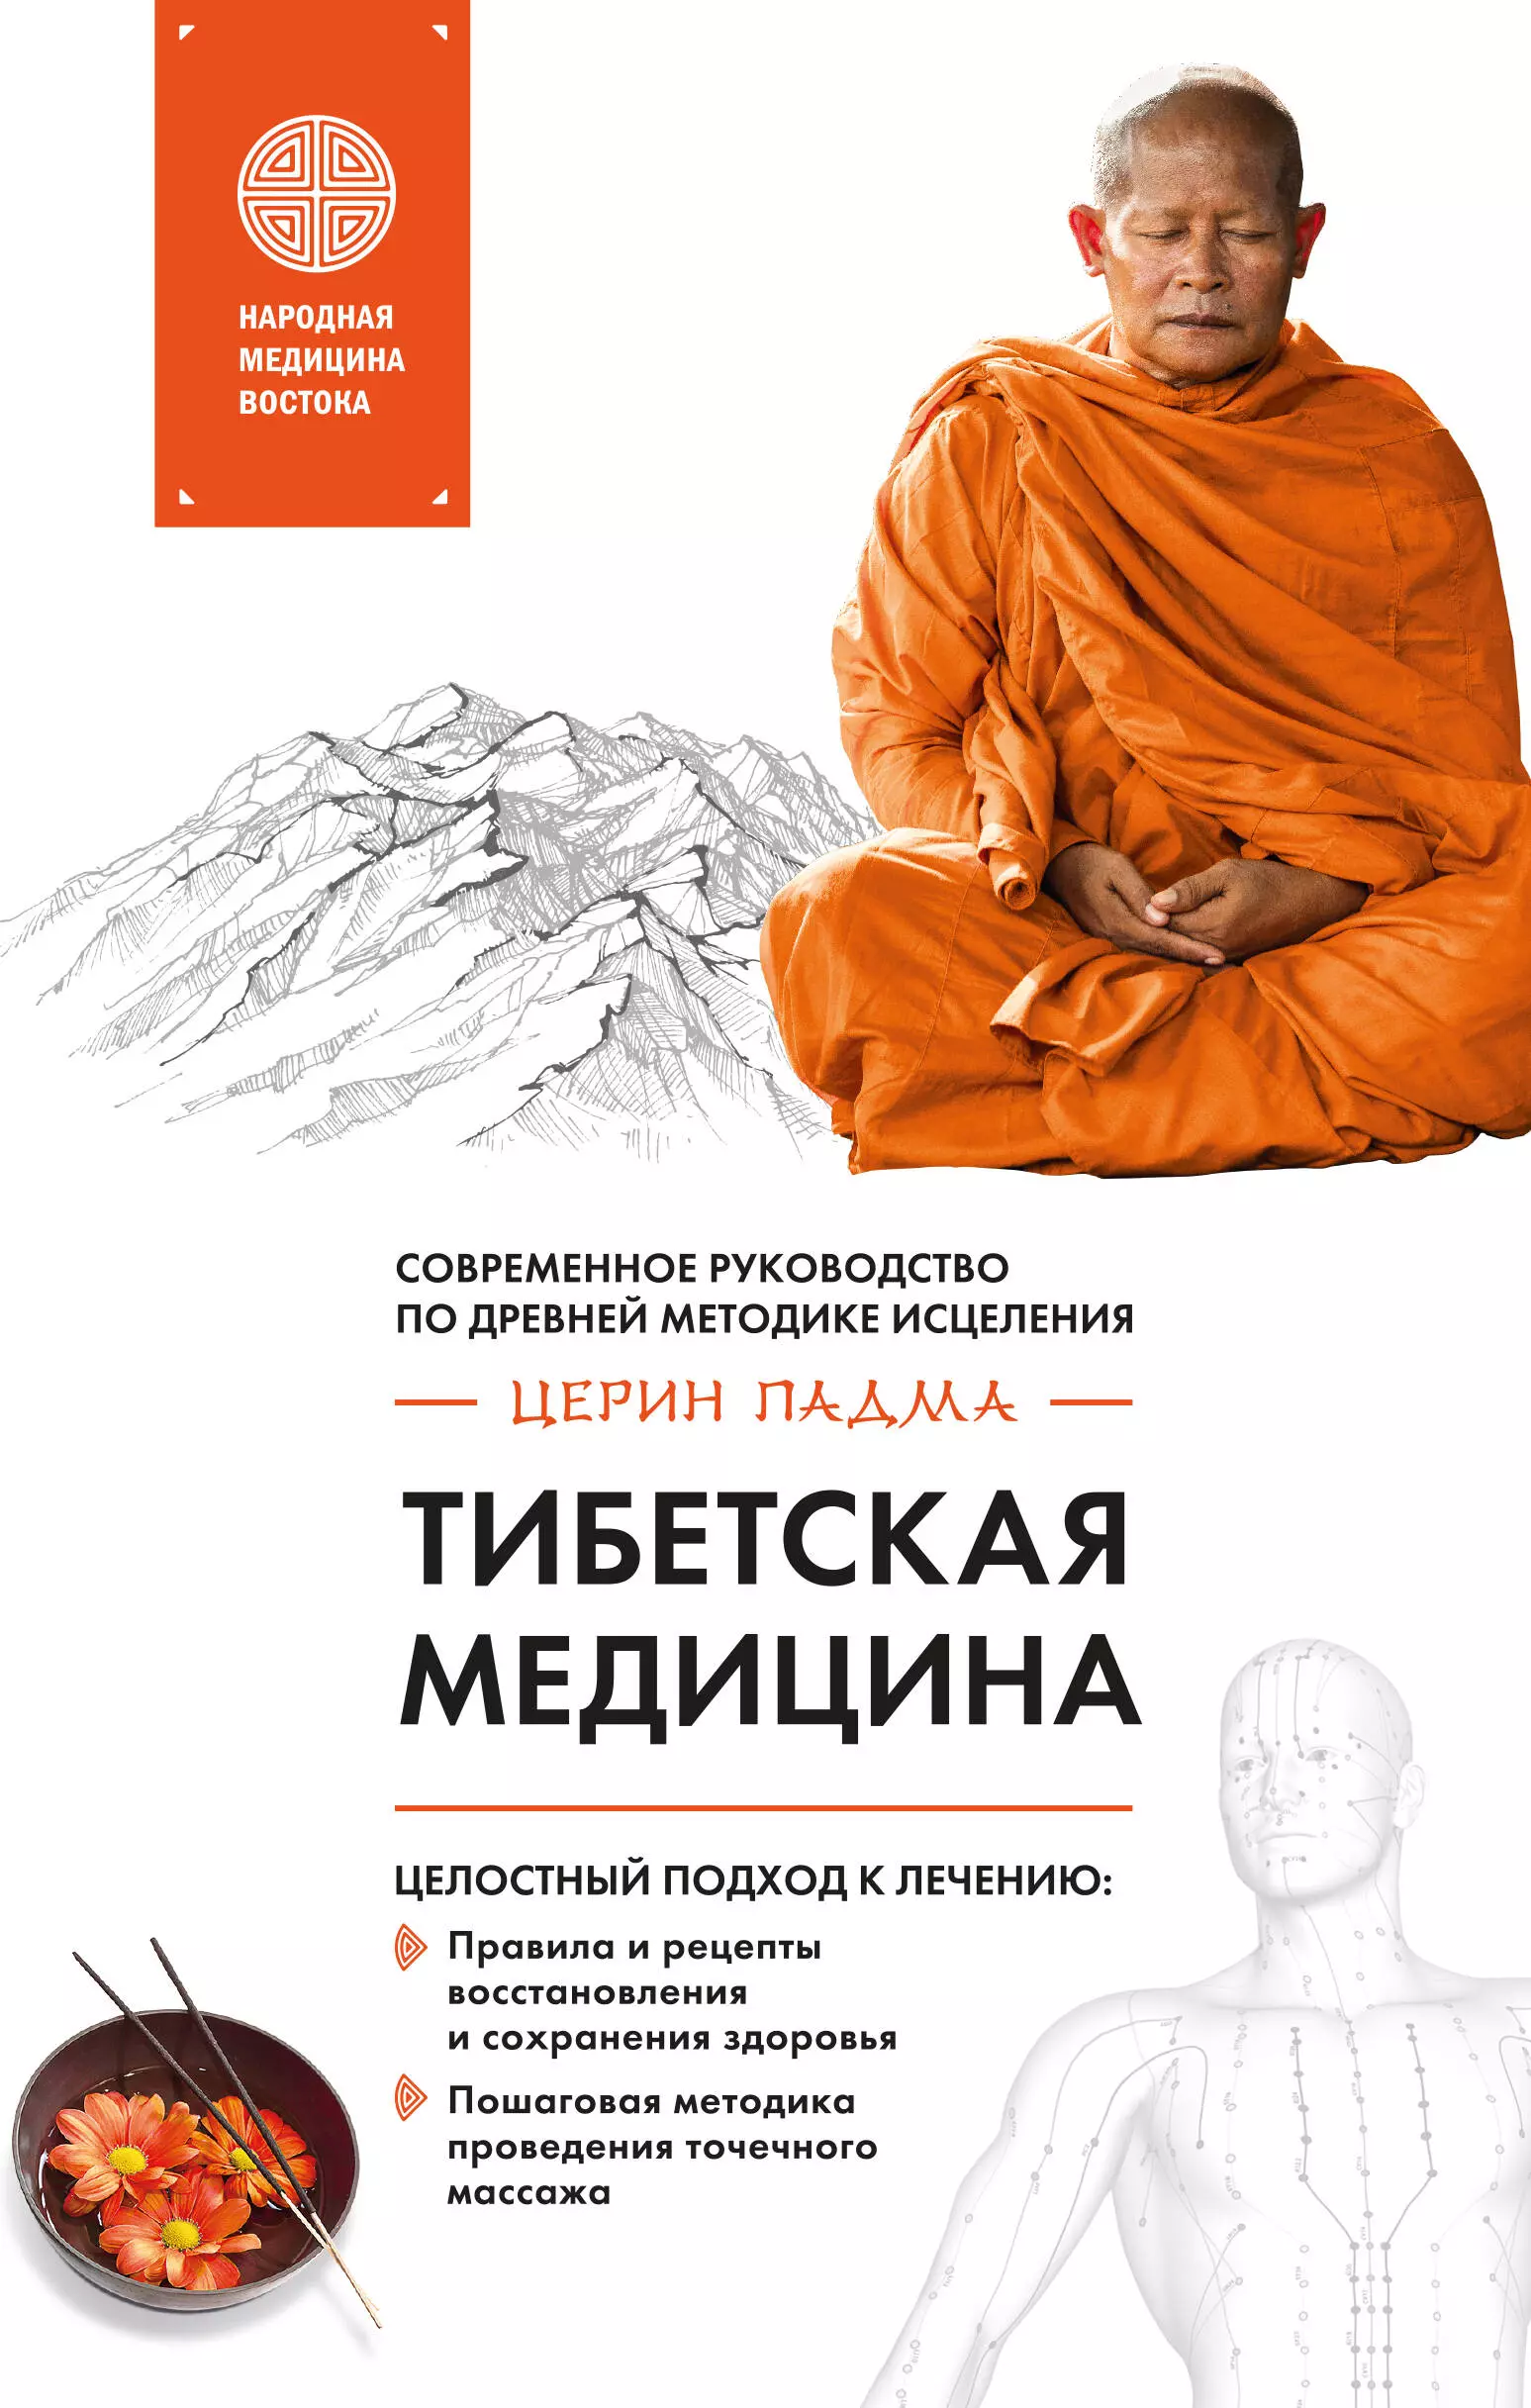 Церин Падма - Тибетская медицина: современное руководство по древней методике исцеления